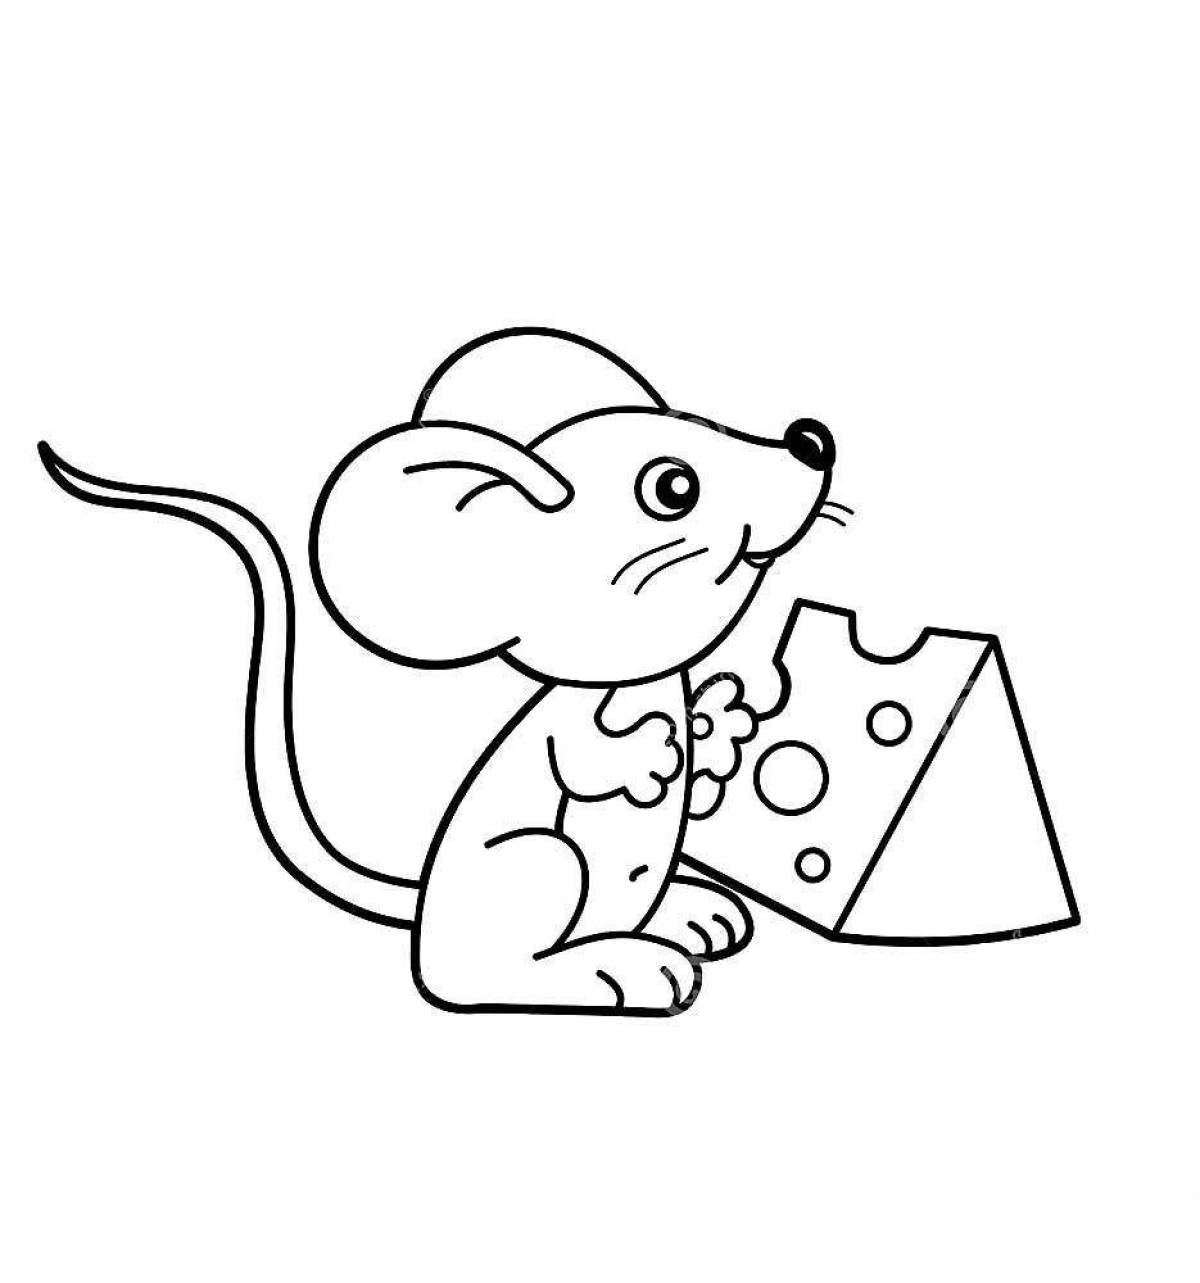 Радостная раскраска мышь для детей 2-3 лет